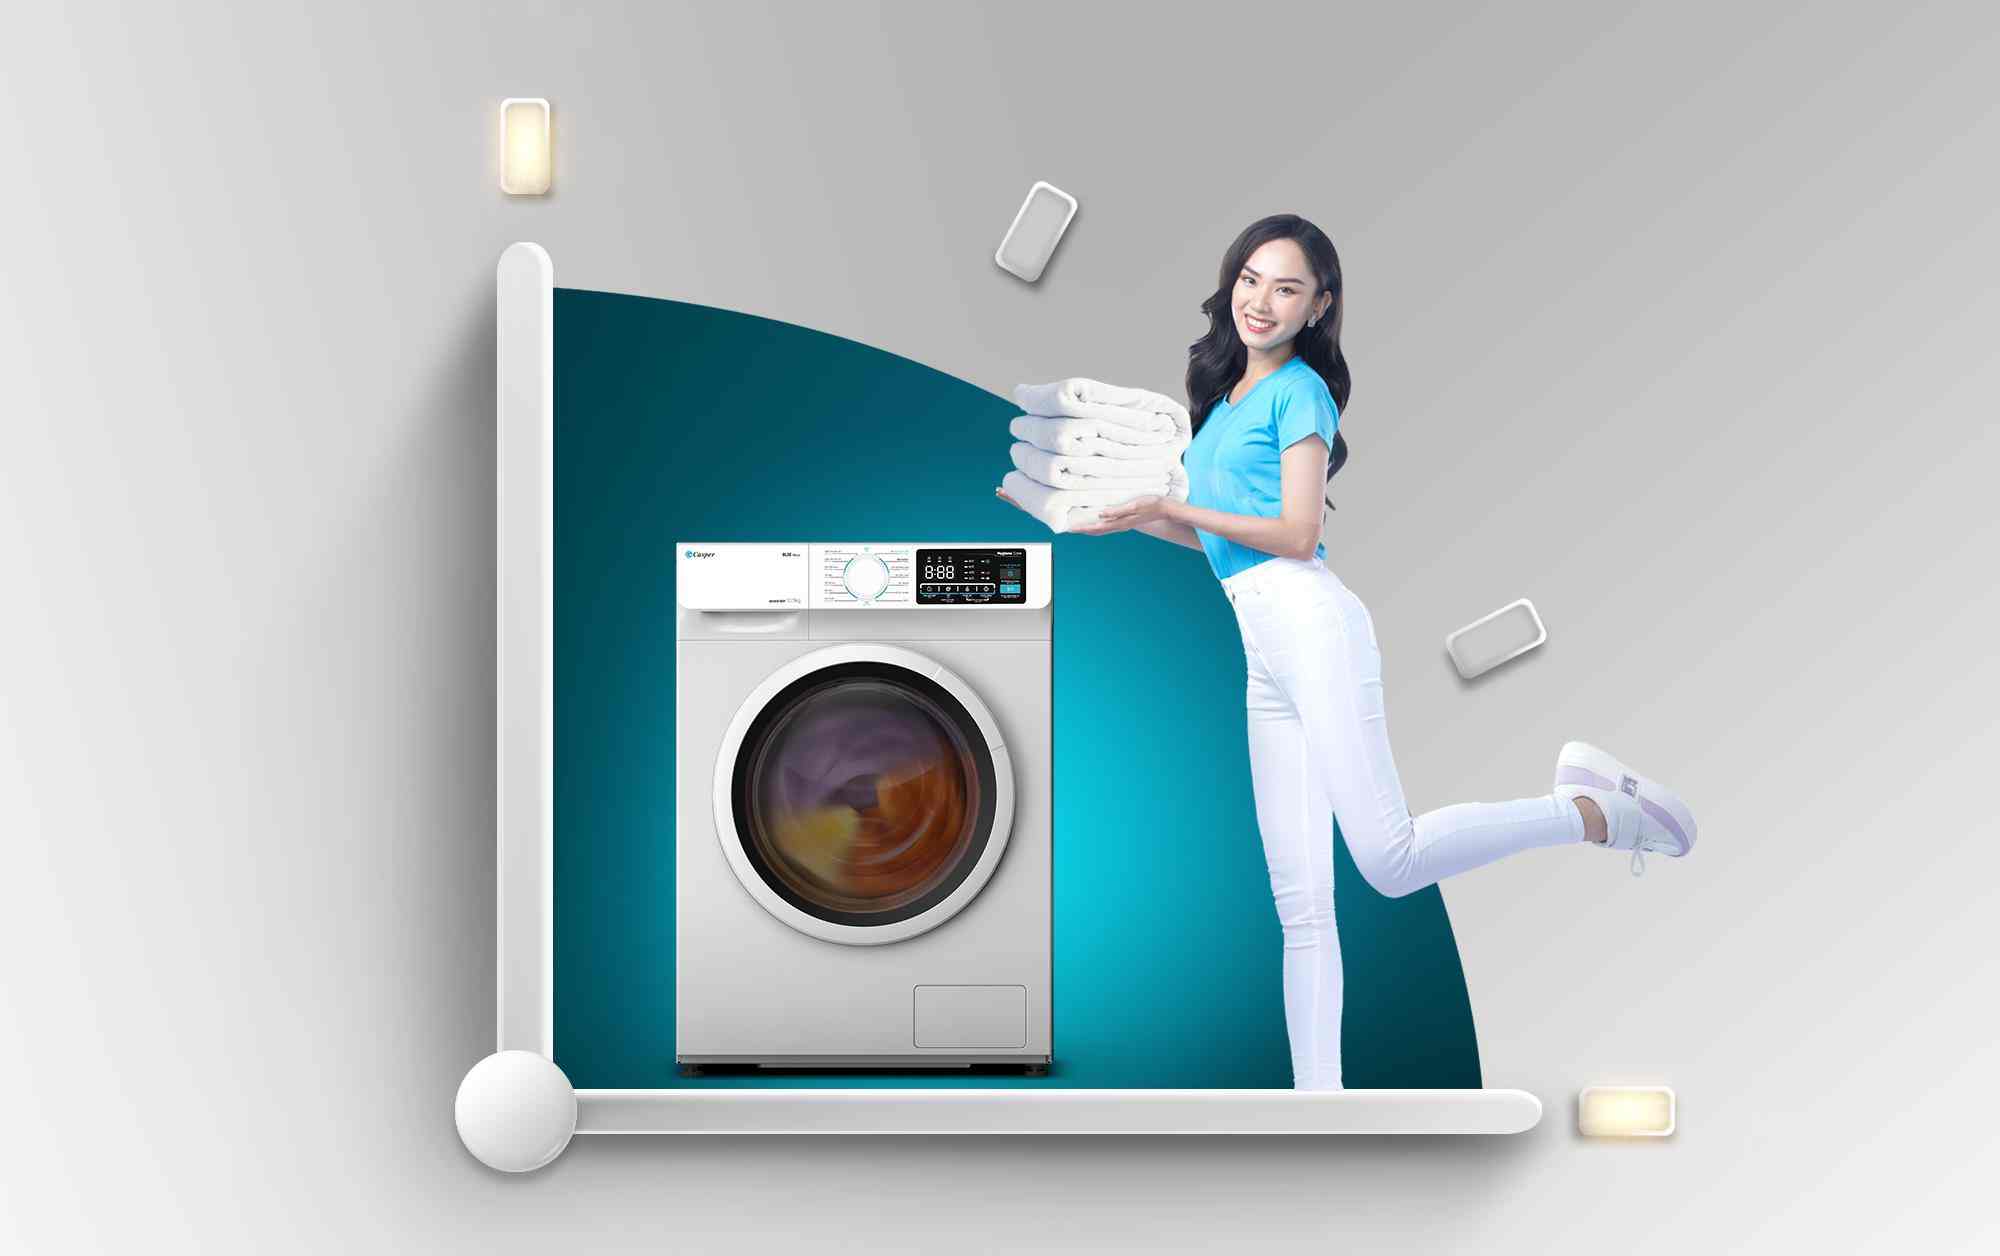 thinh-phat-máy giặt Casper còn sở hữu nhiều tiện ích thông minh khác như